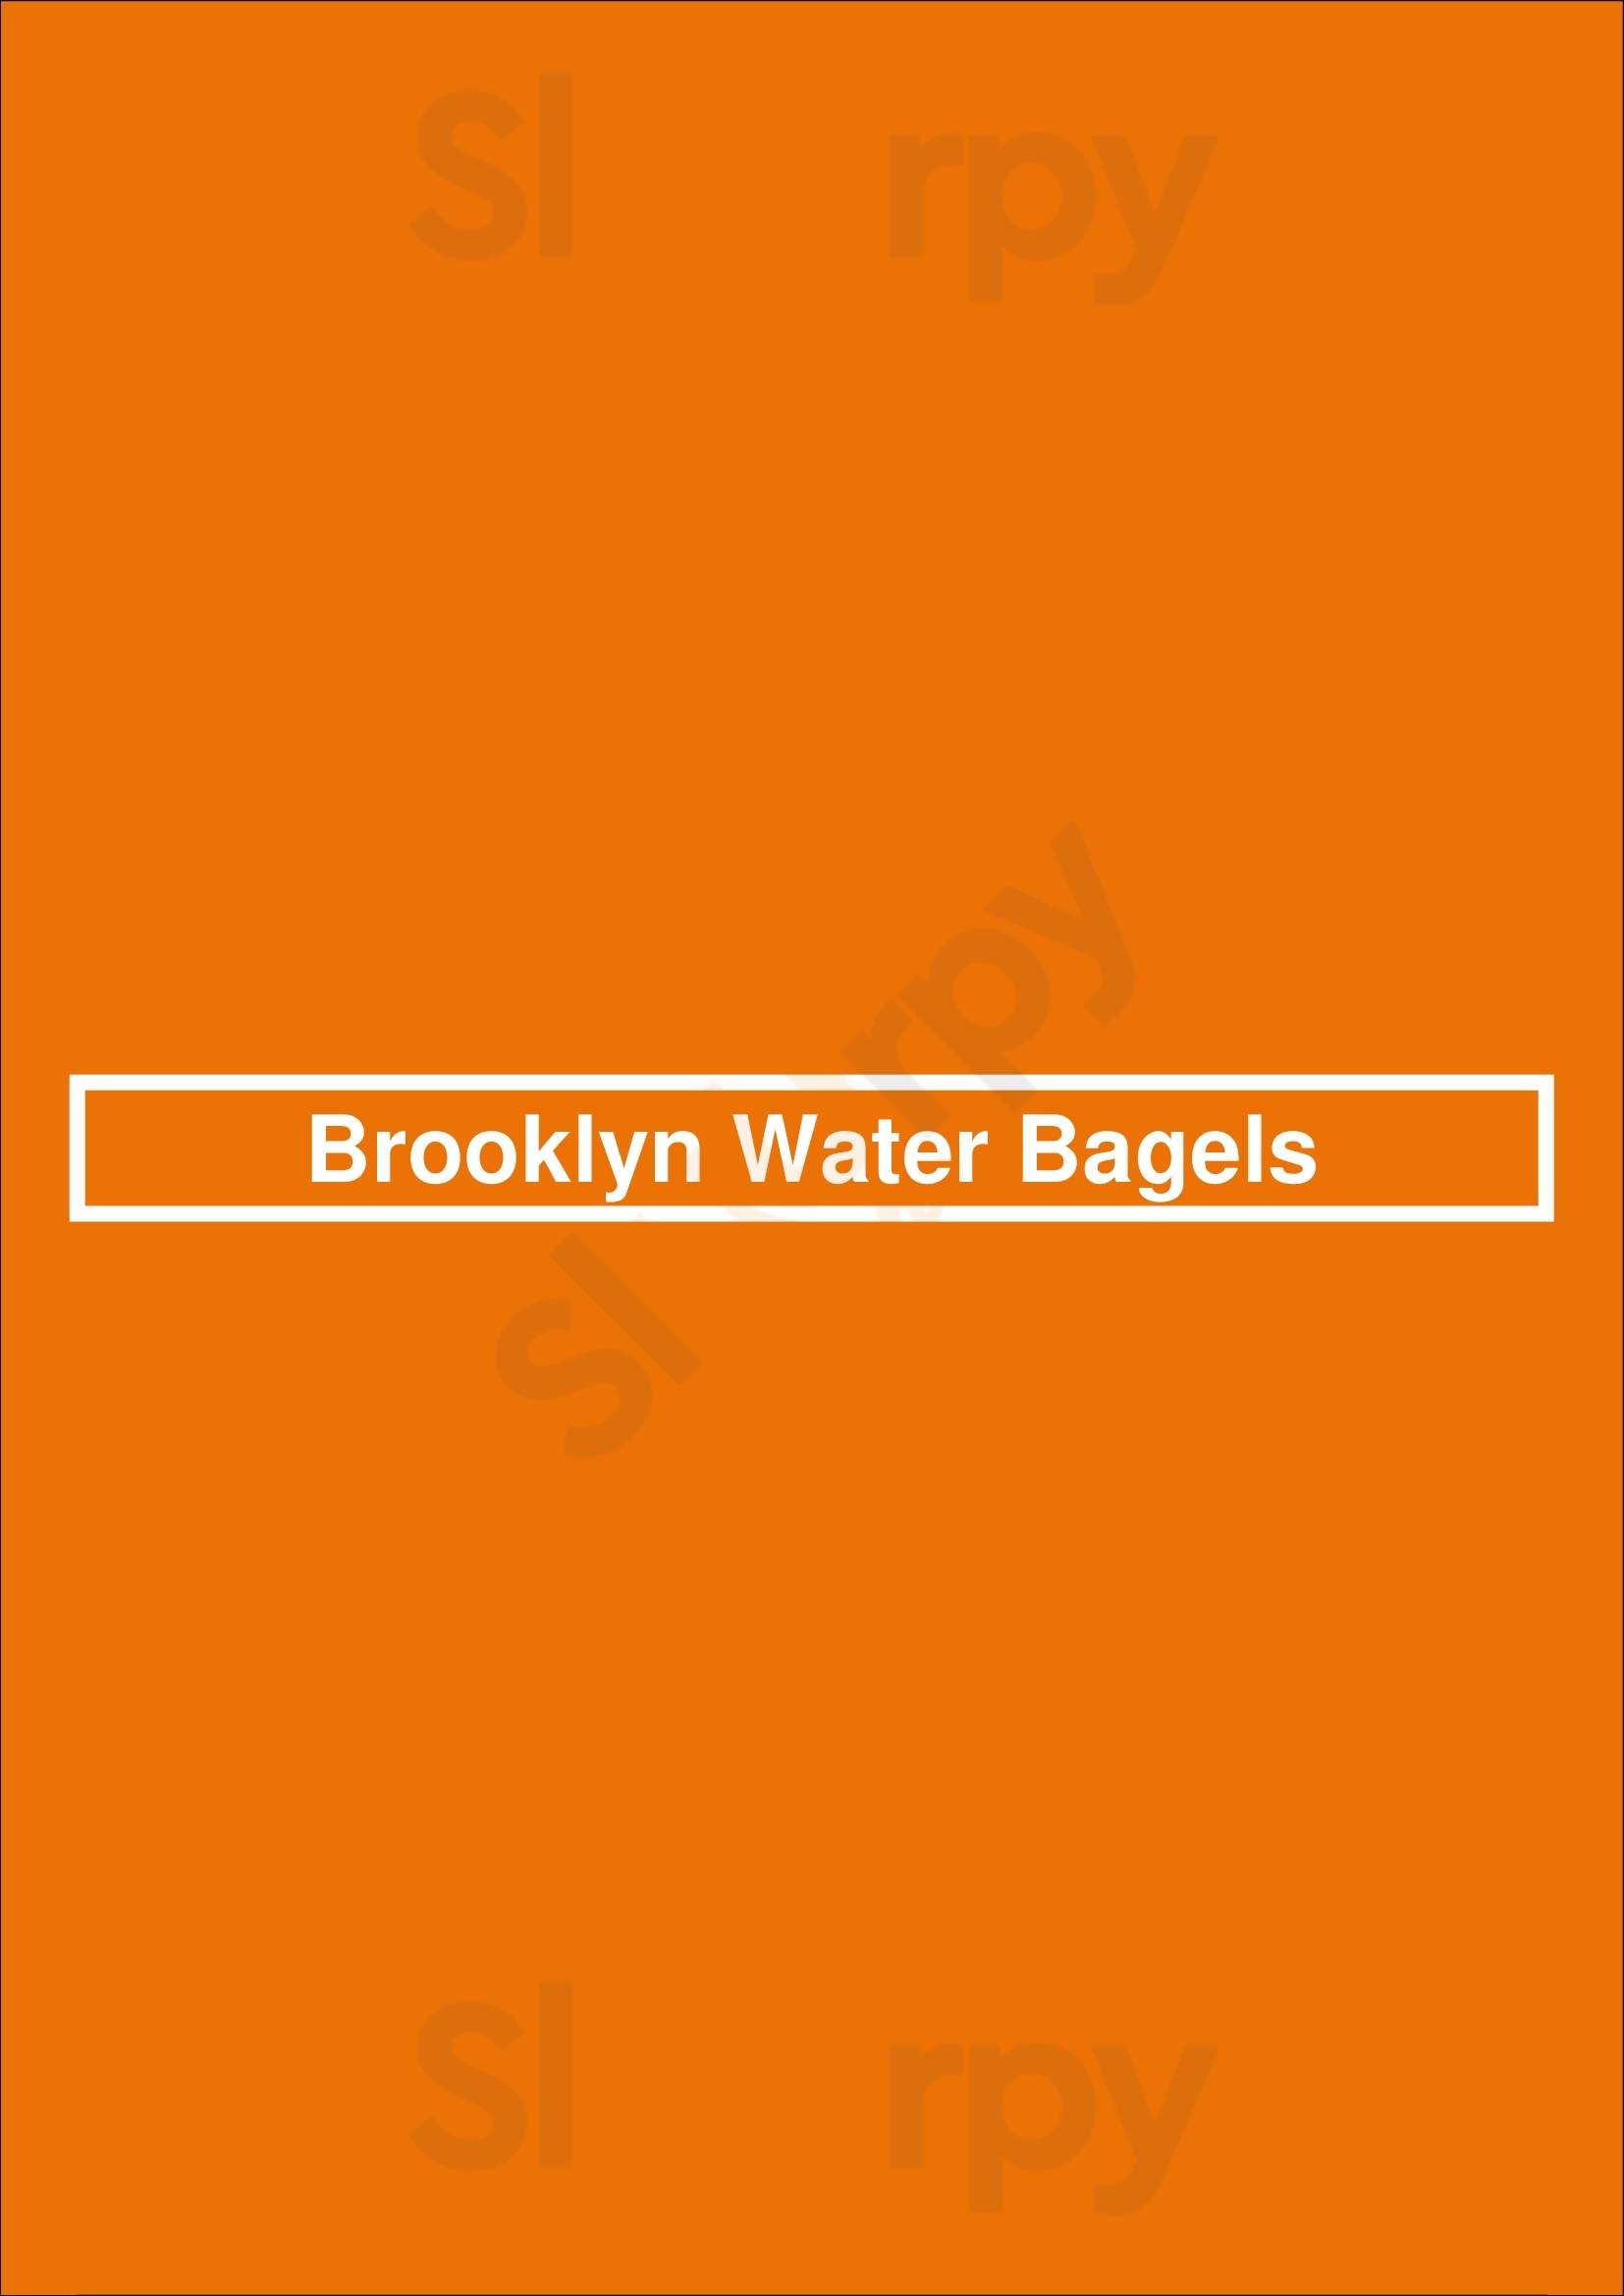 Brooklyn Water Bagels Vero Beach Menu - 1